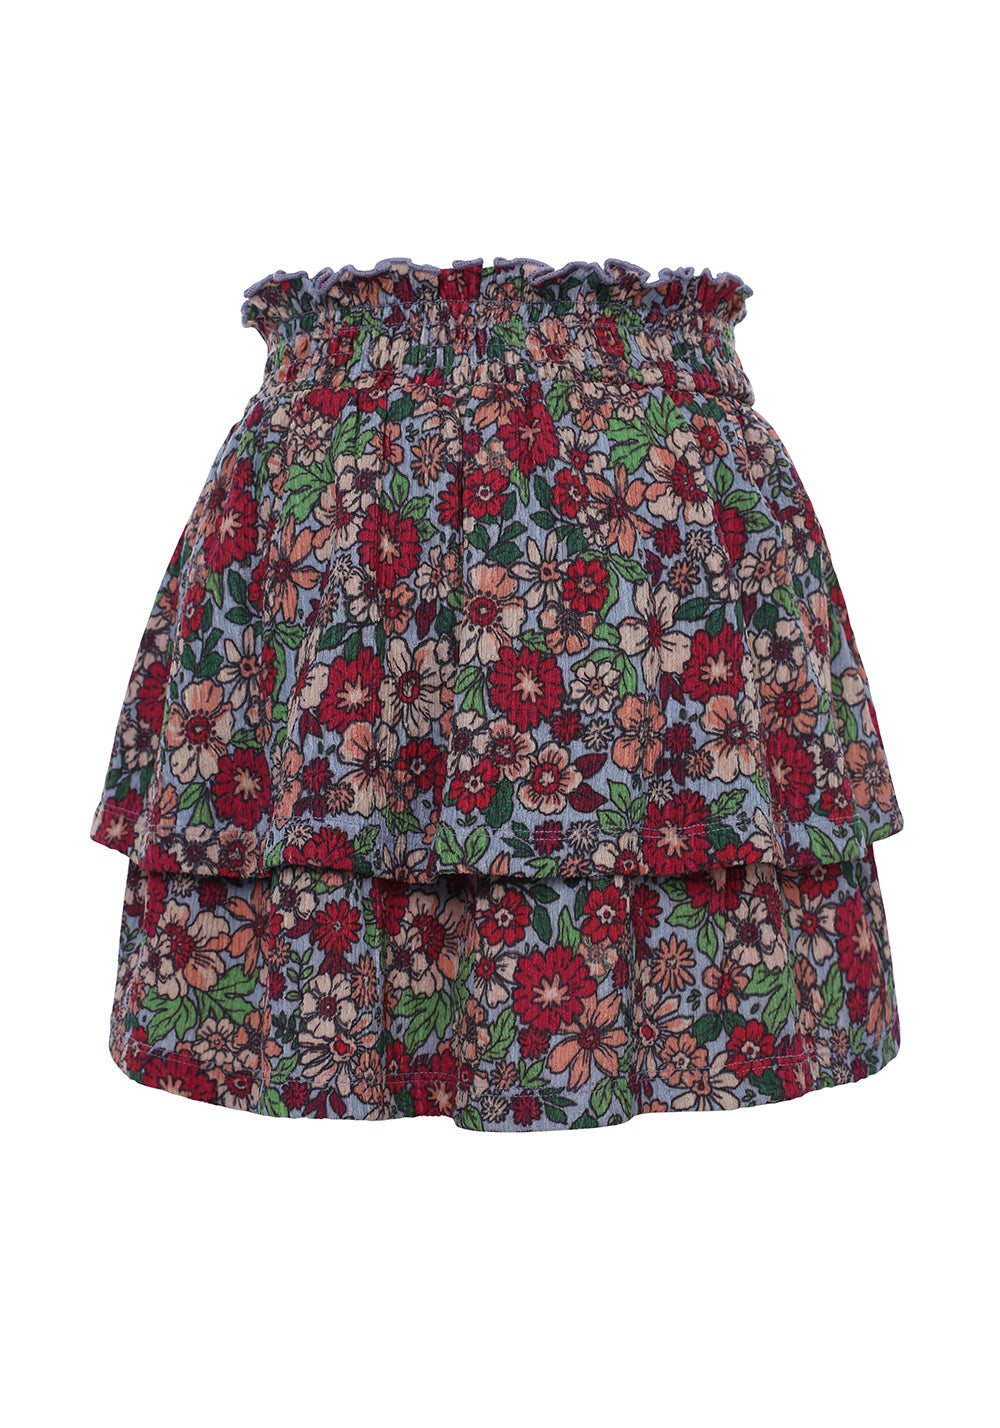 Meisjes Fancy Skirt van LOOXS Little in de kleur FLOWERFIELD in maat 128.